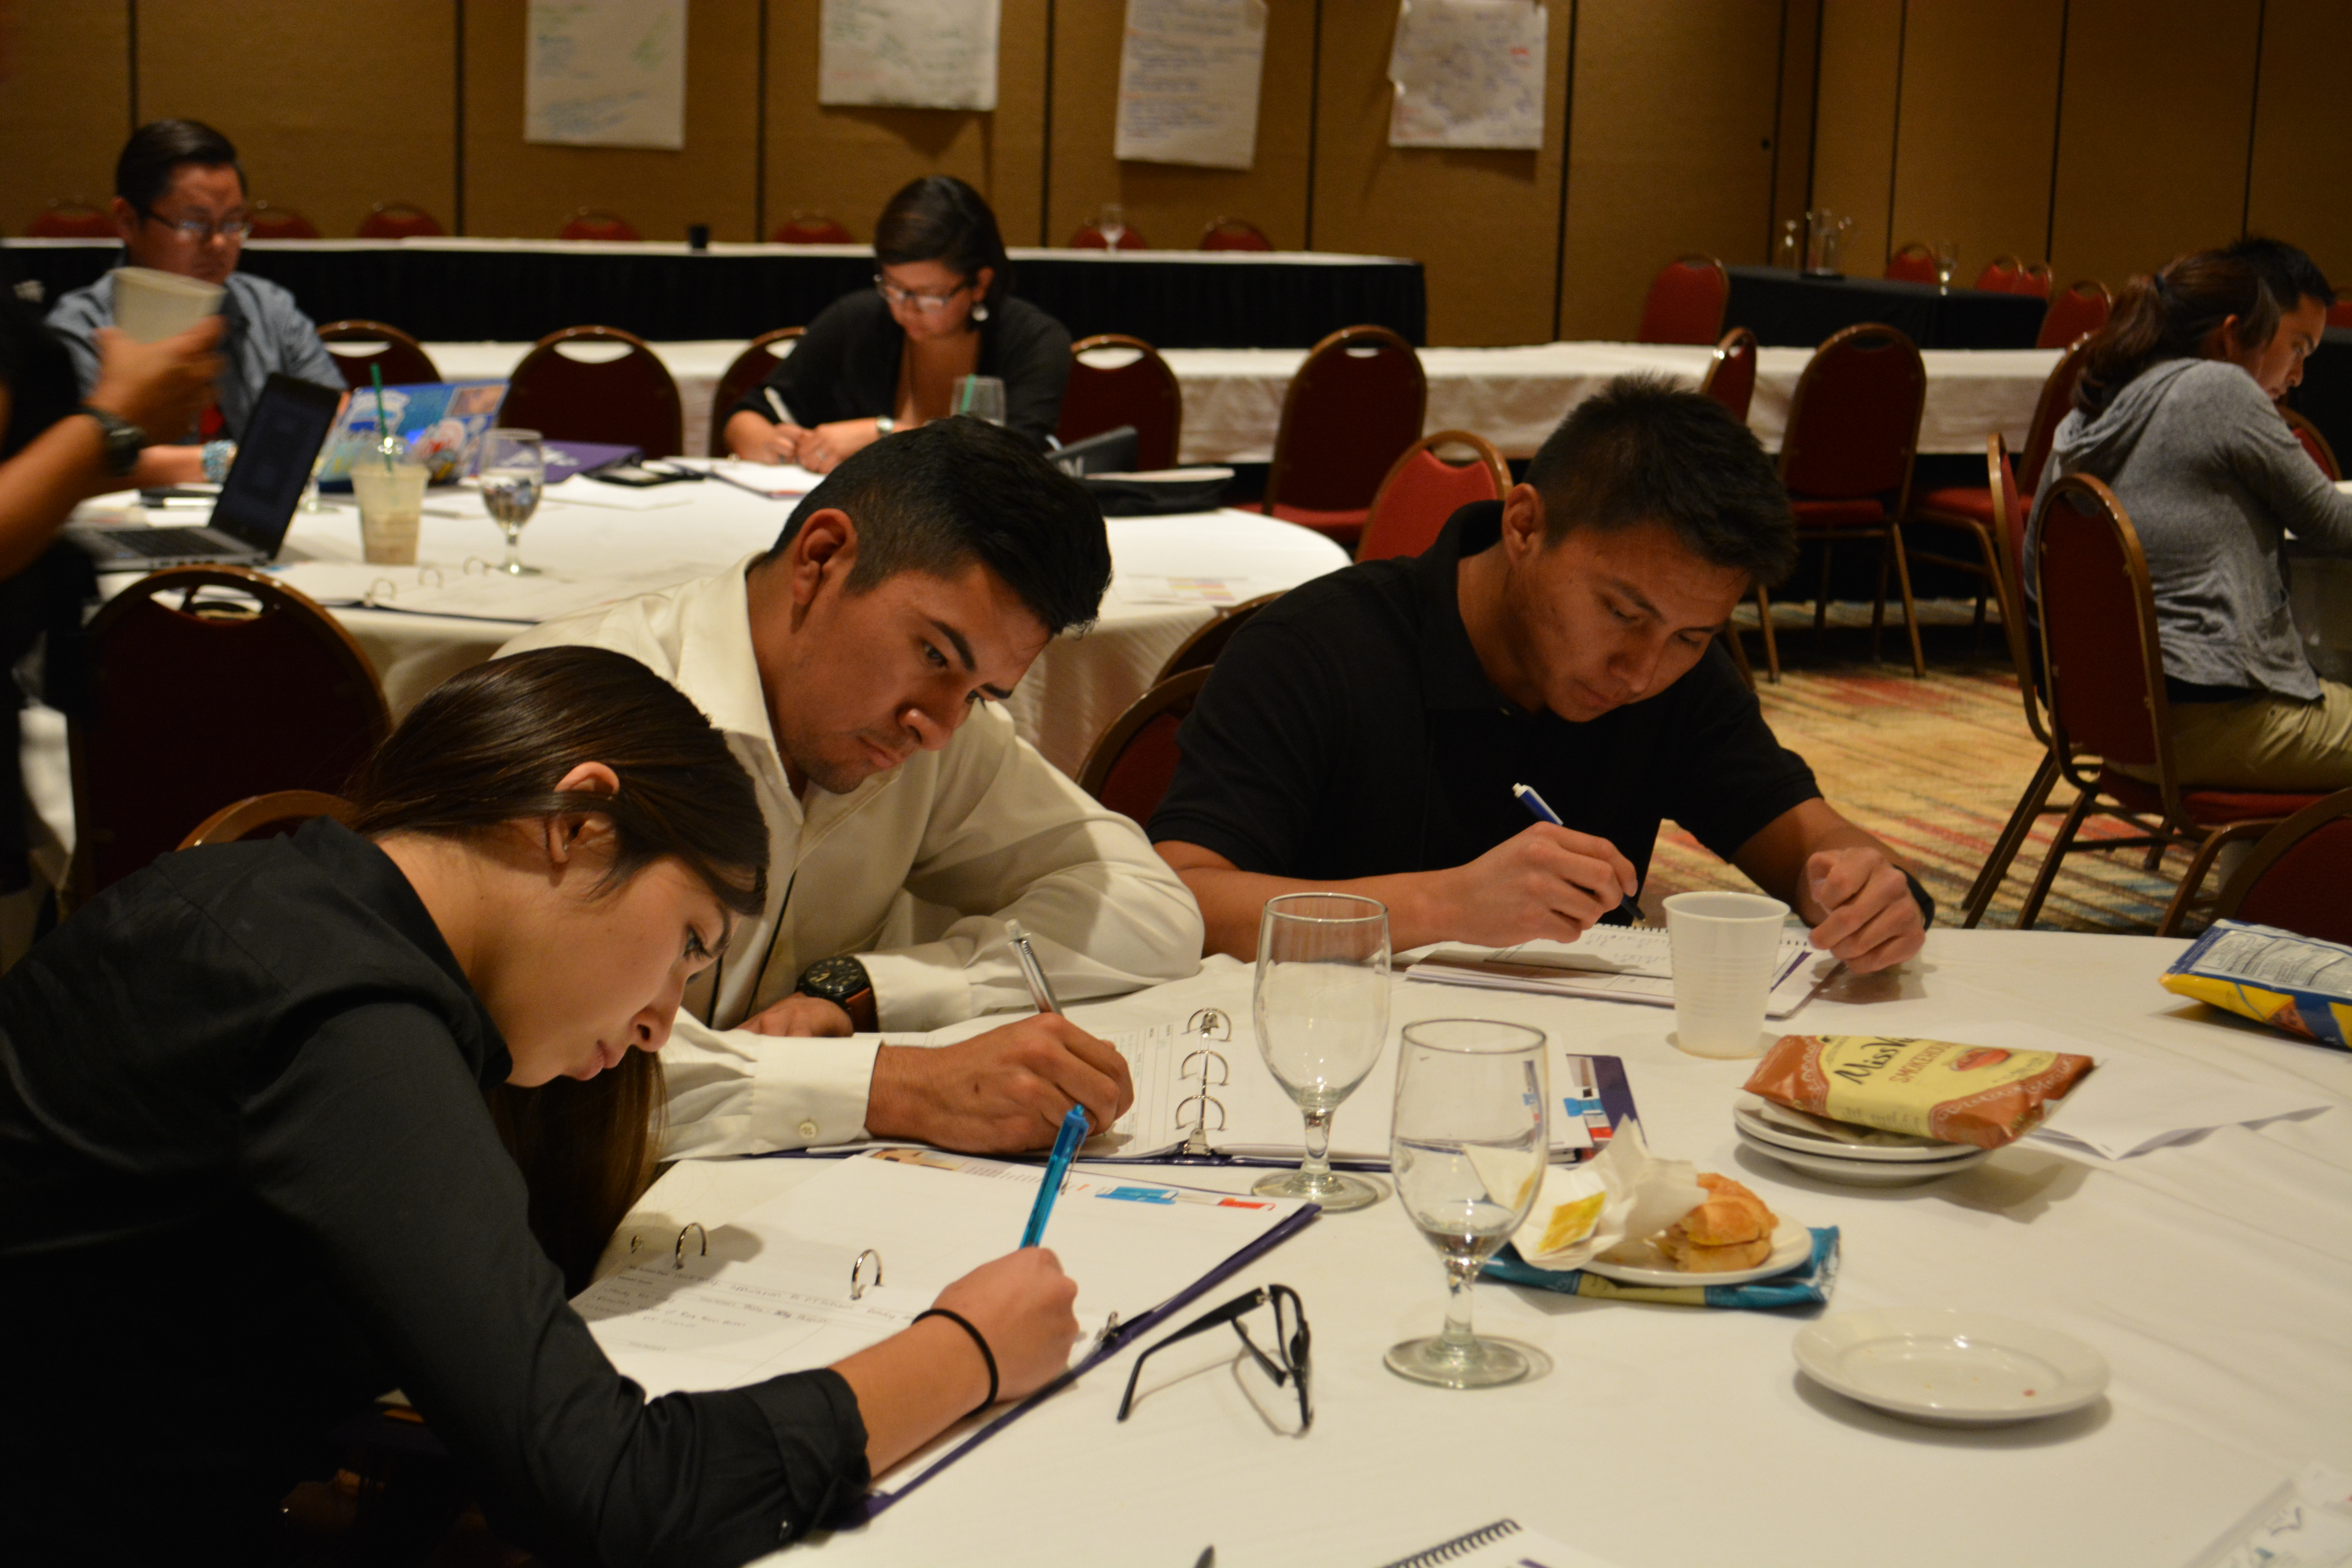 Participantes escribiendo en mesas.